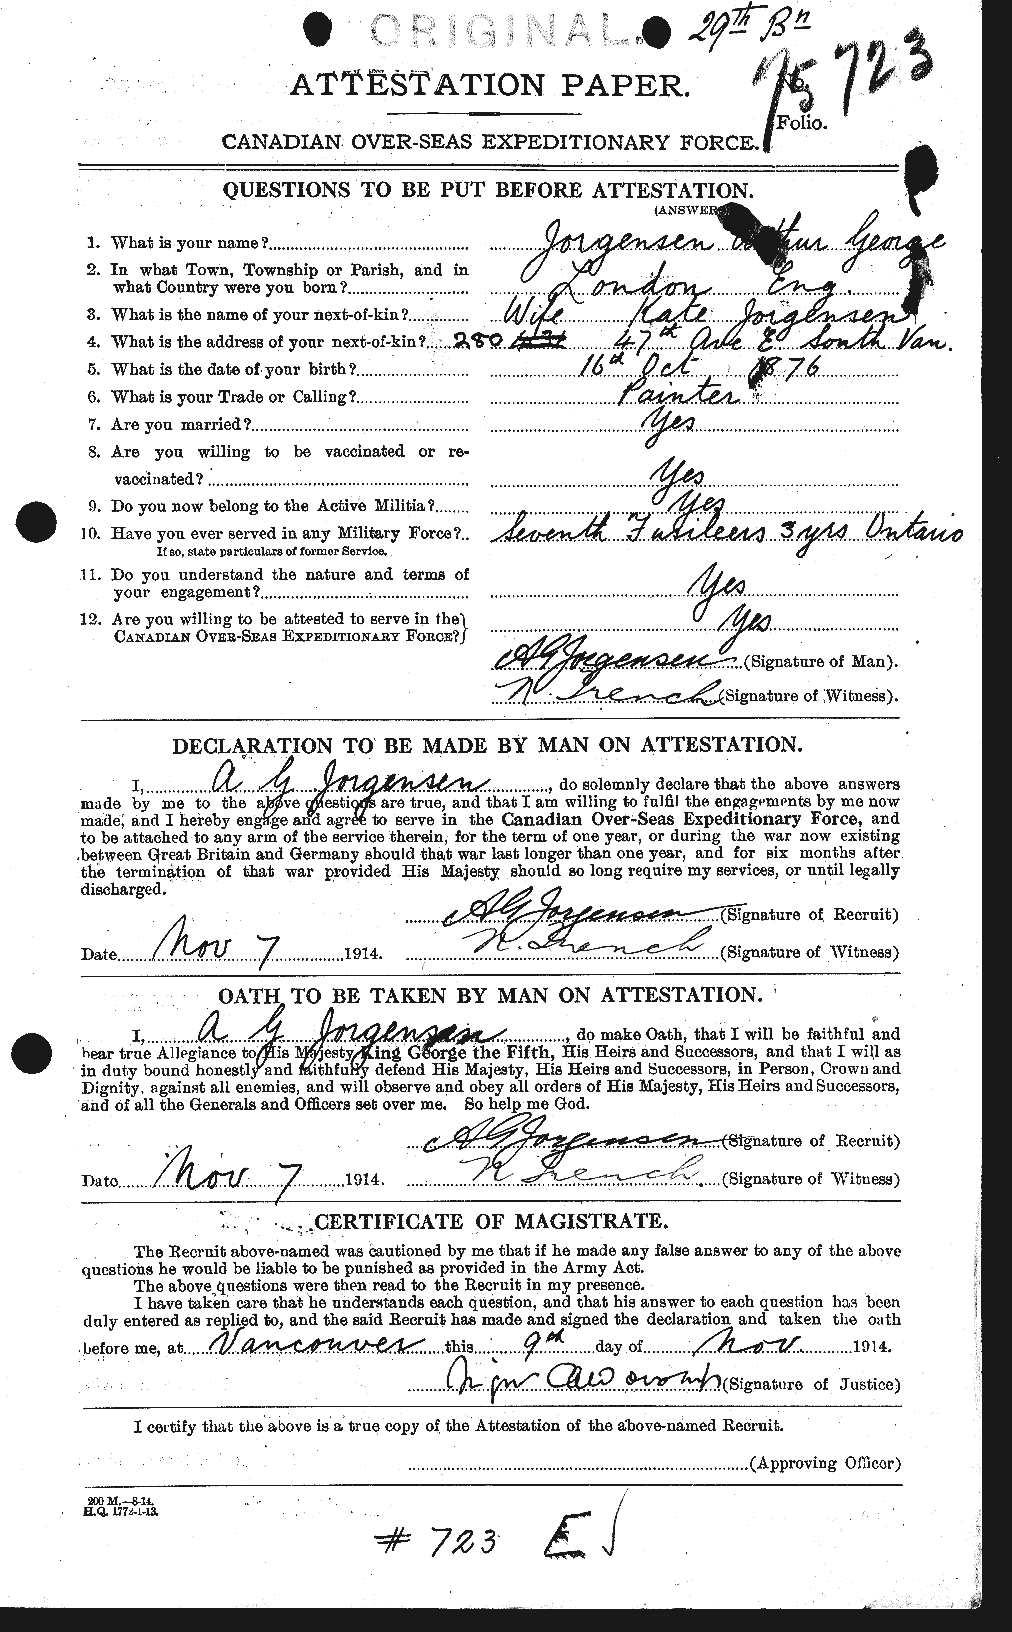 Dossiers du Personnel de la Première Guerre mondiale - CEC 424531a